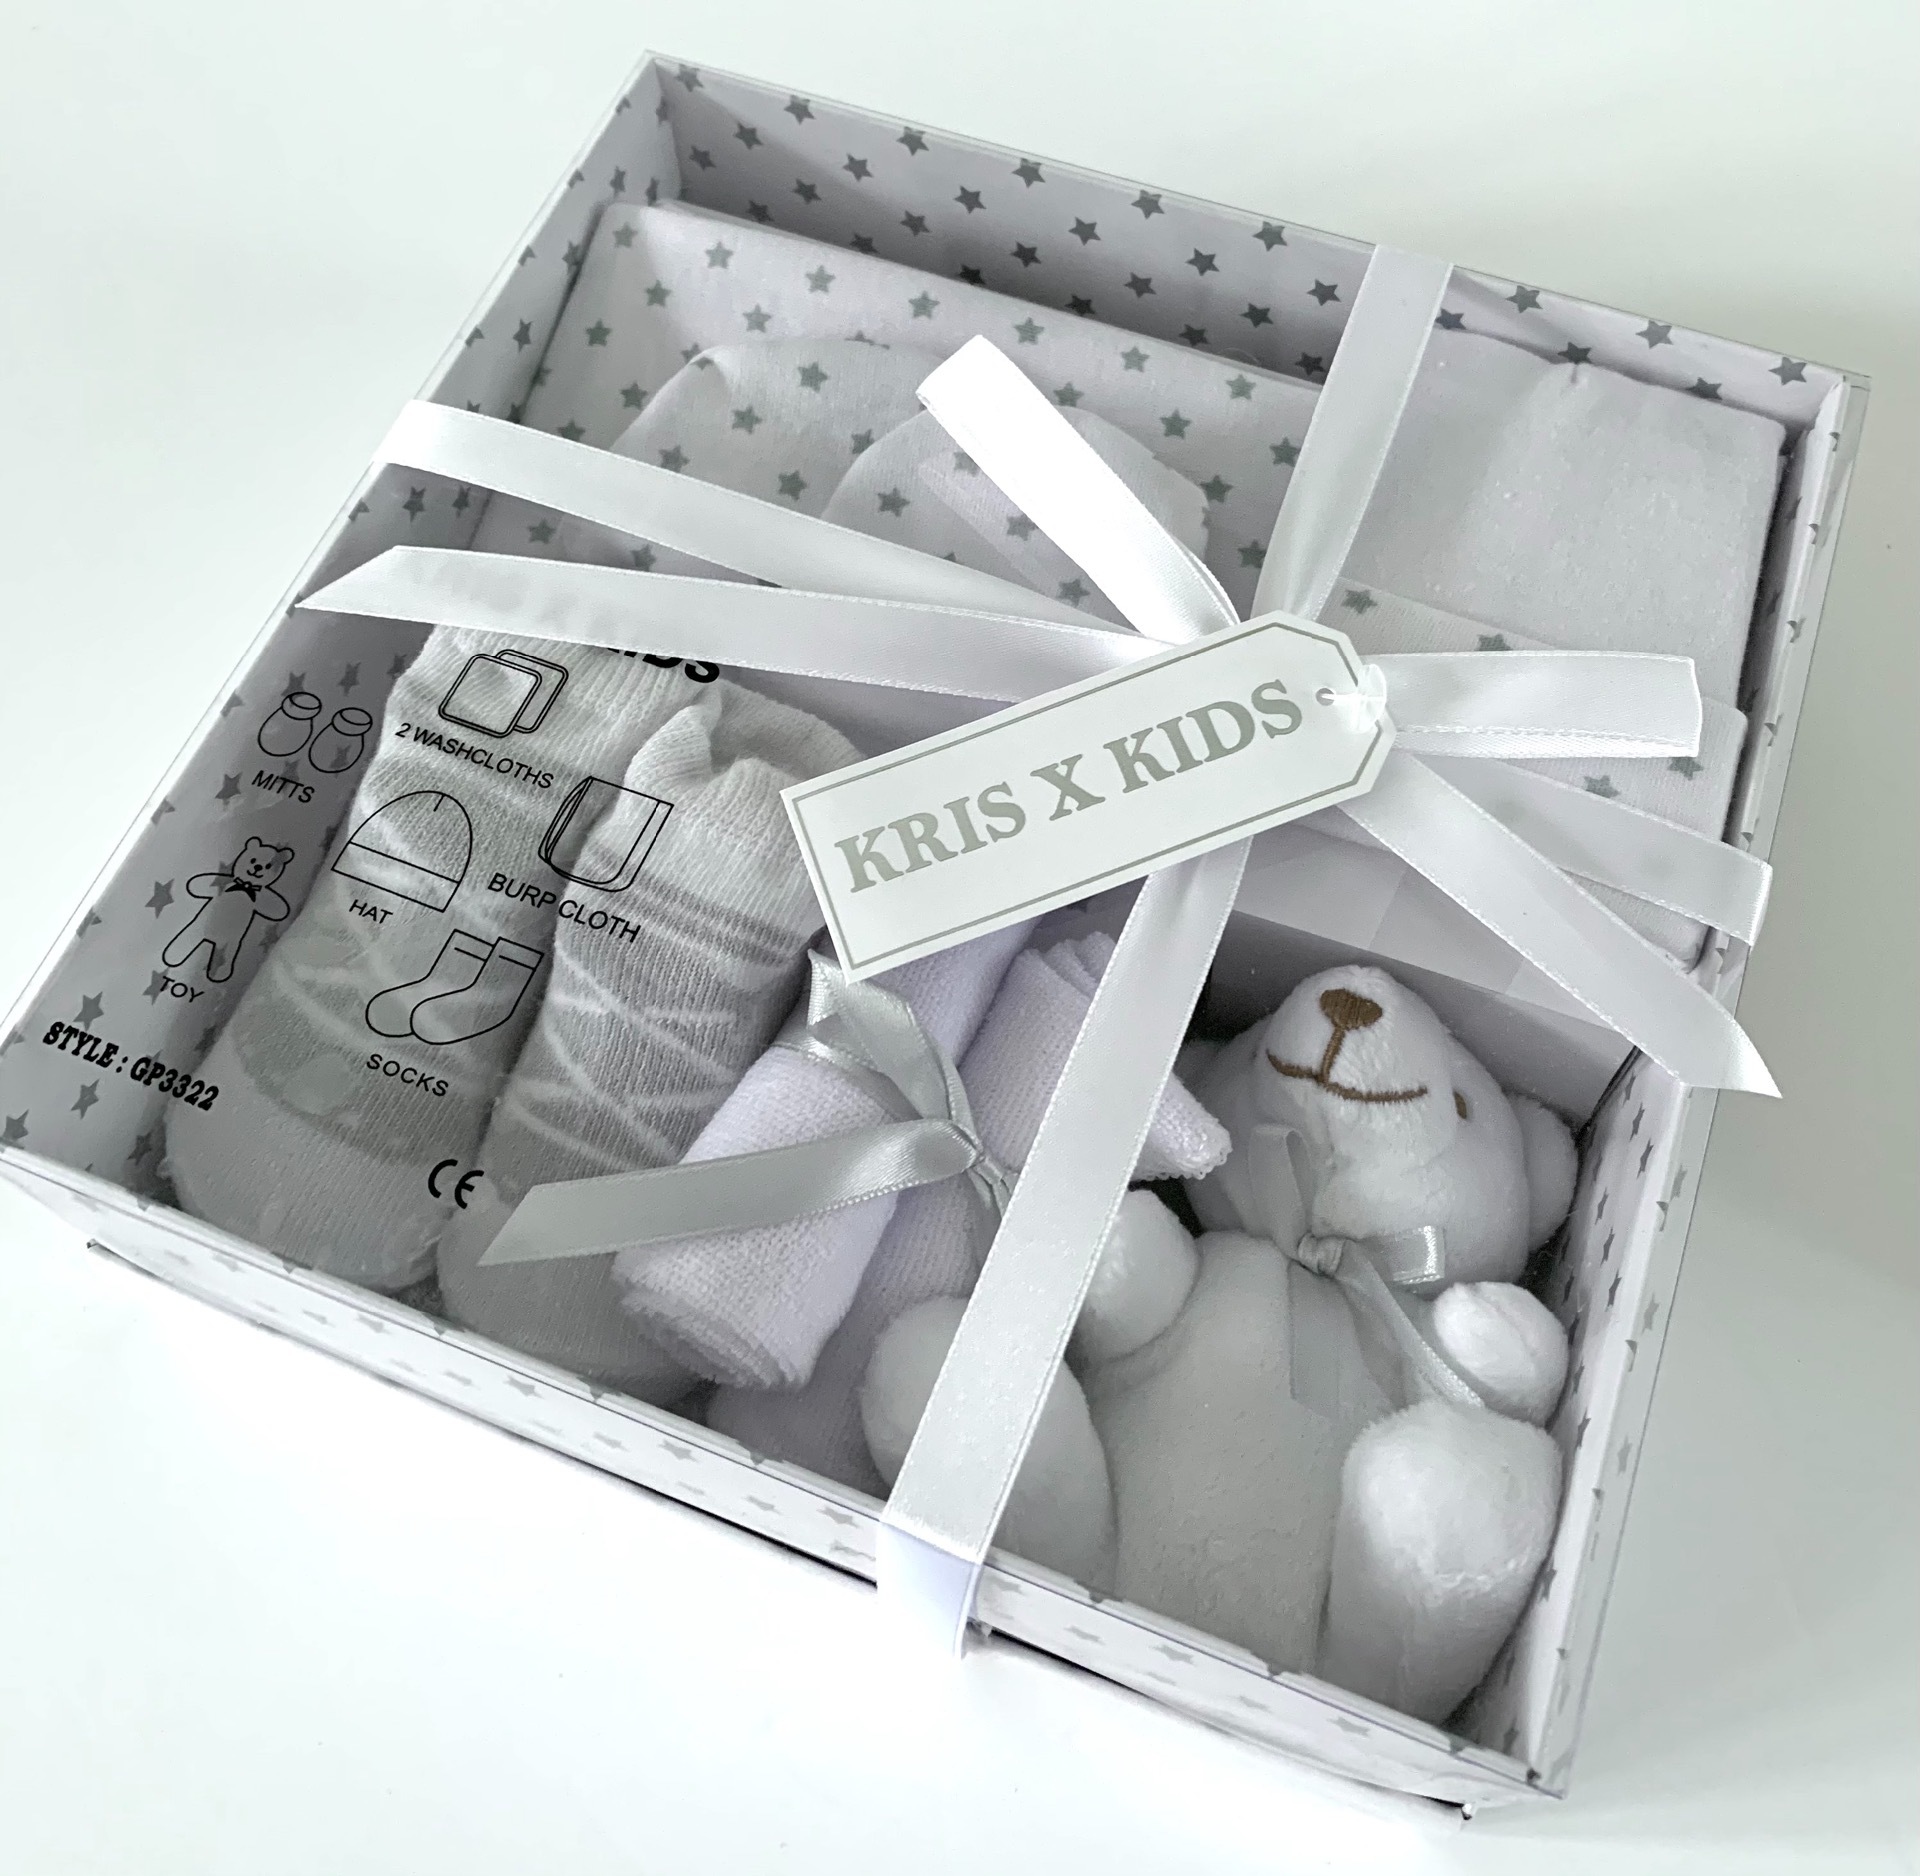 Kris X Kids White Baby Gift Set